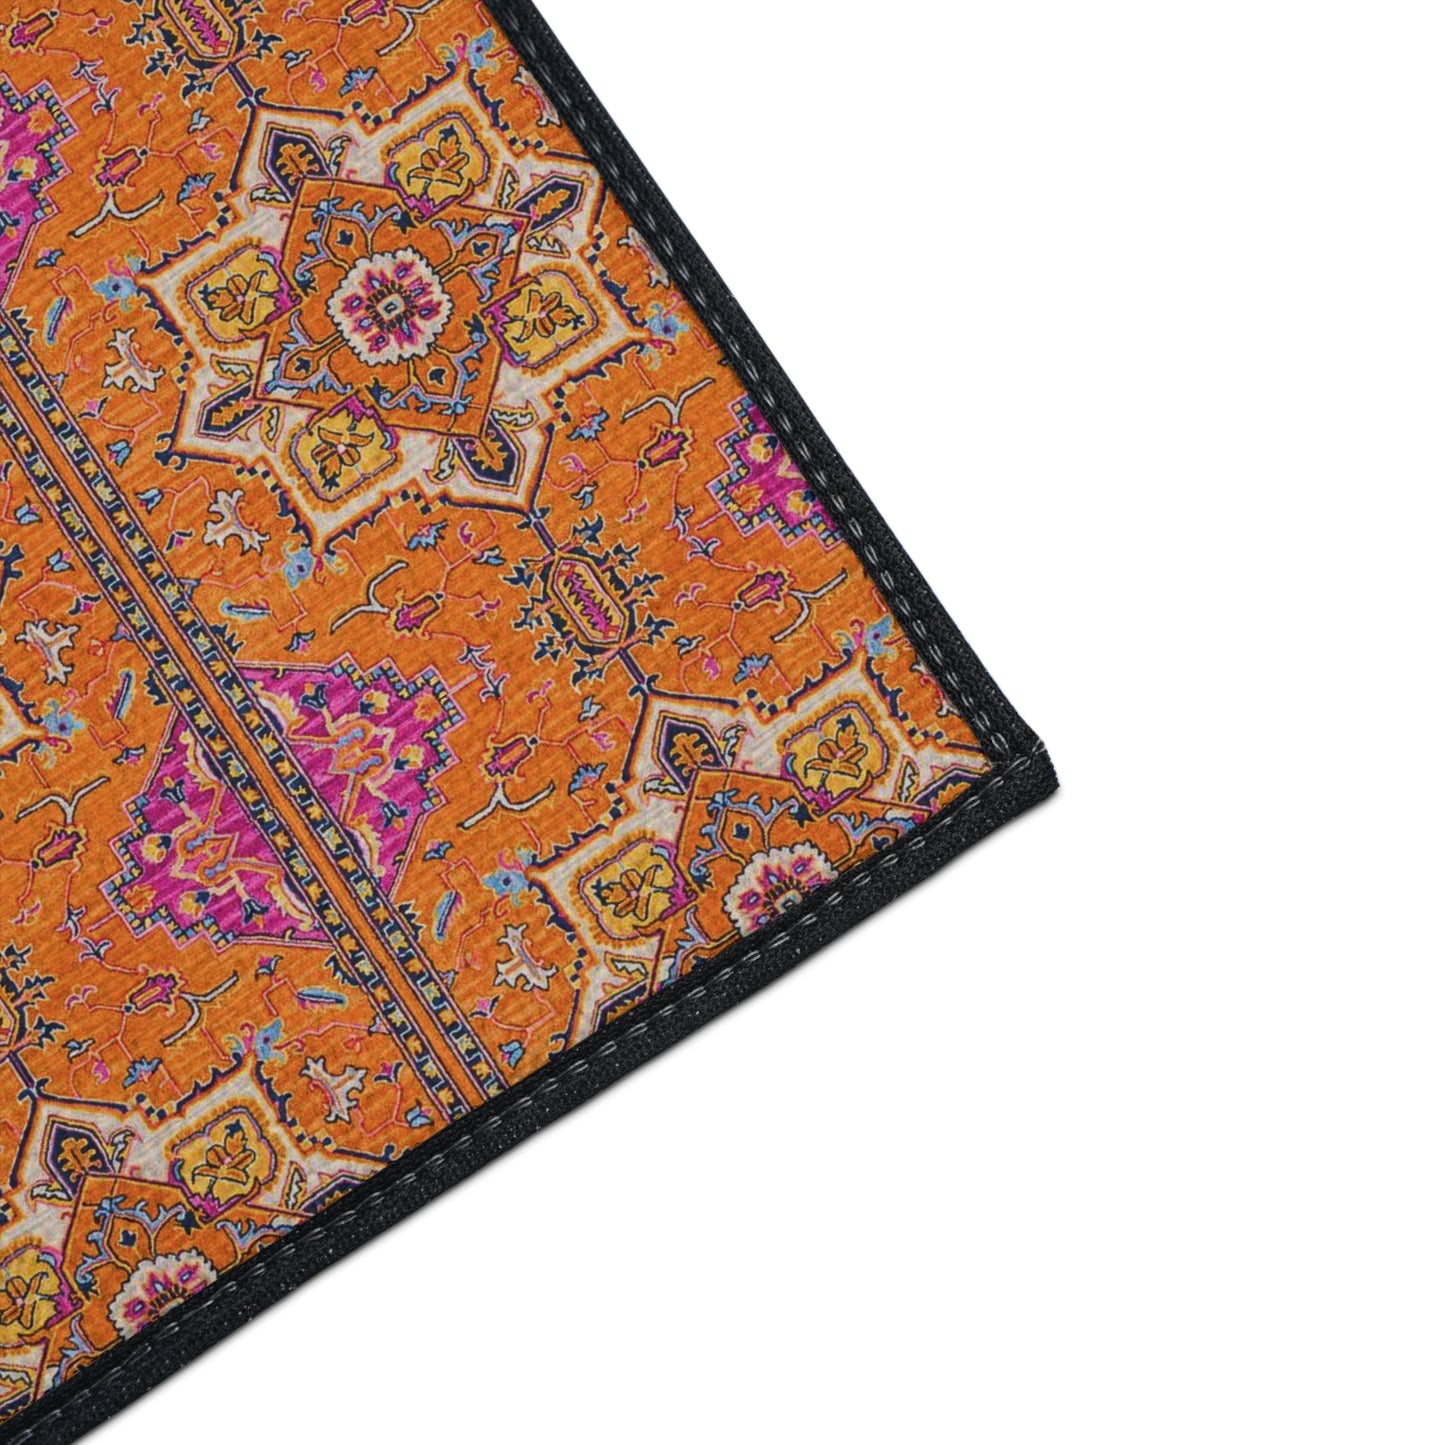 Berber Tribal Nomad Rug Orange Pink Pattern Bohemian Decorative Indoor Outdoor Heavy Duty Floor Mat